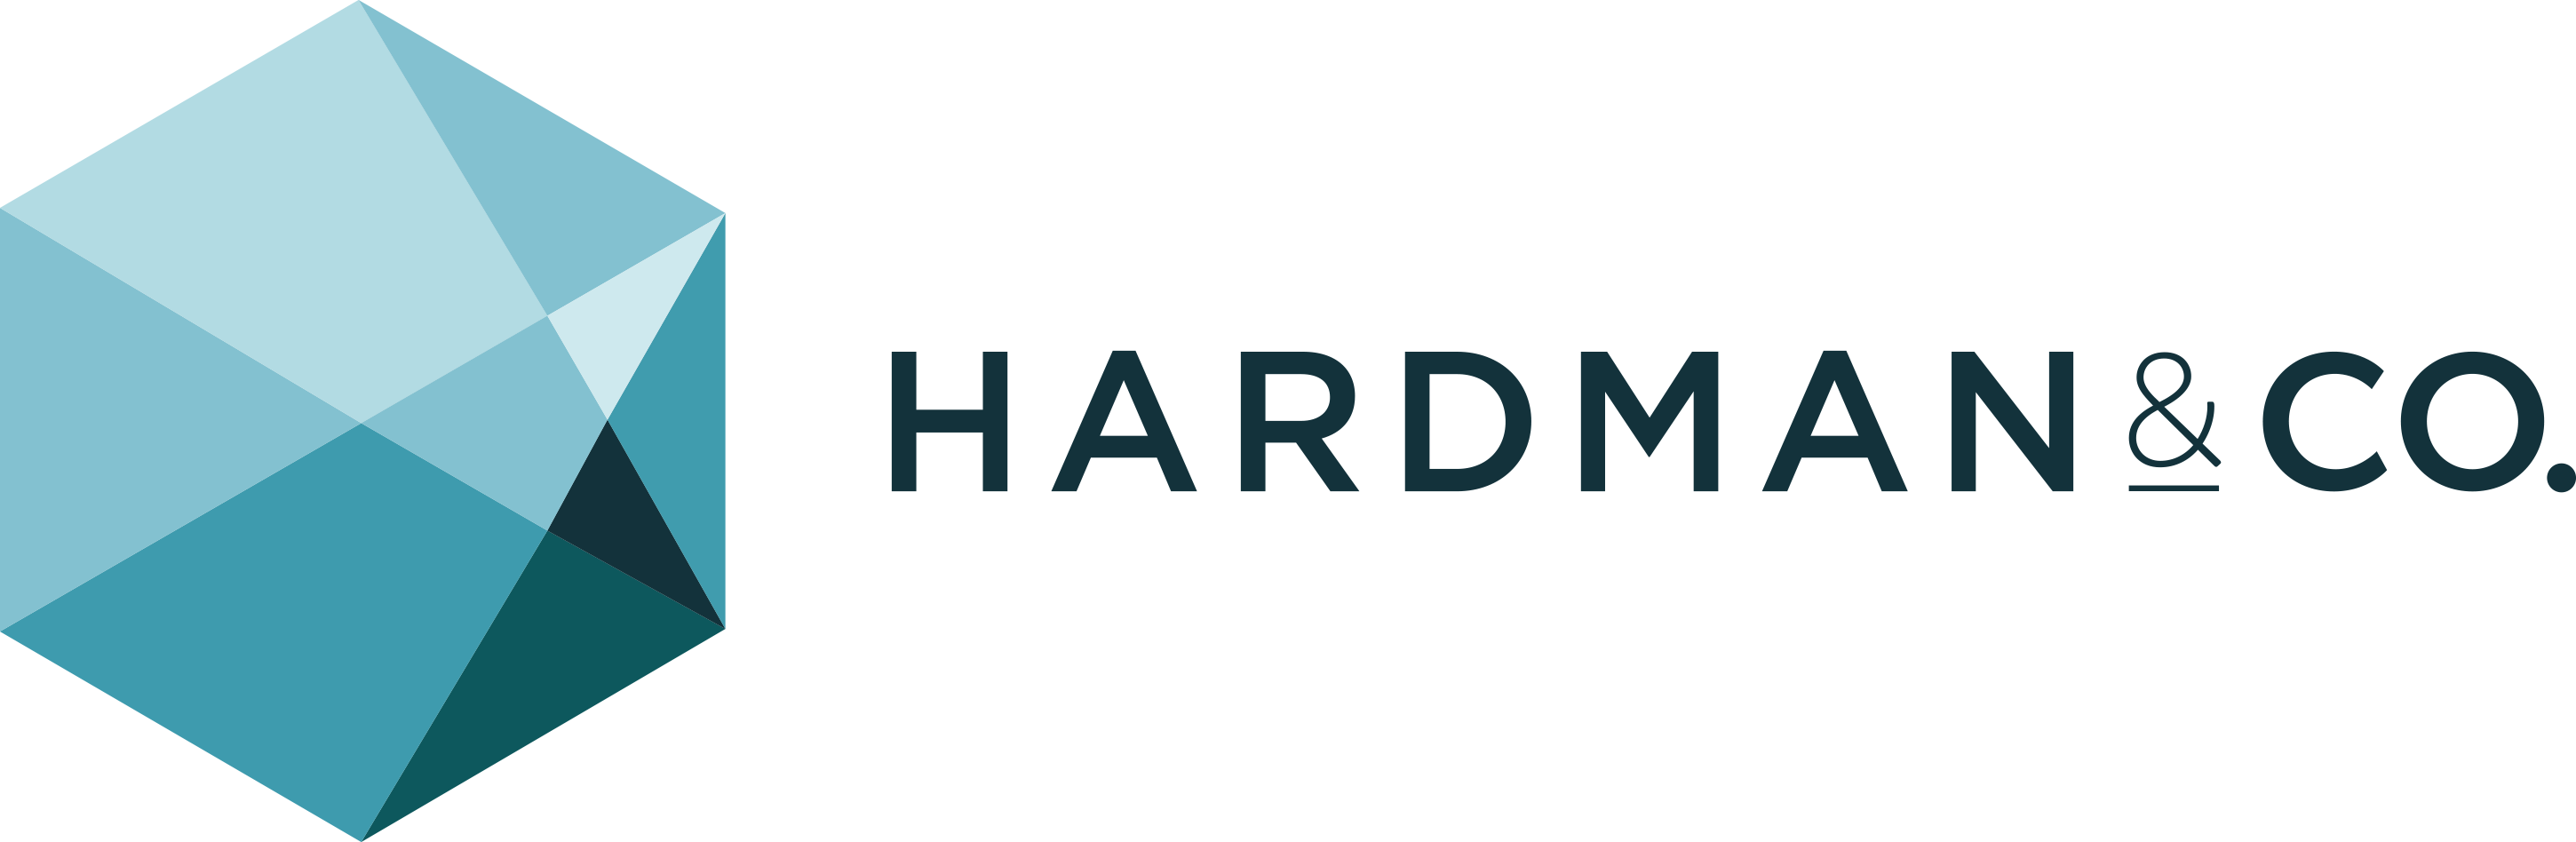 Hardman & Co